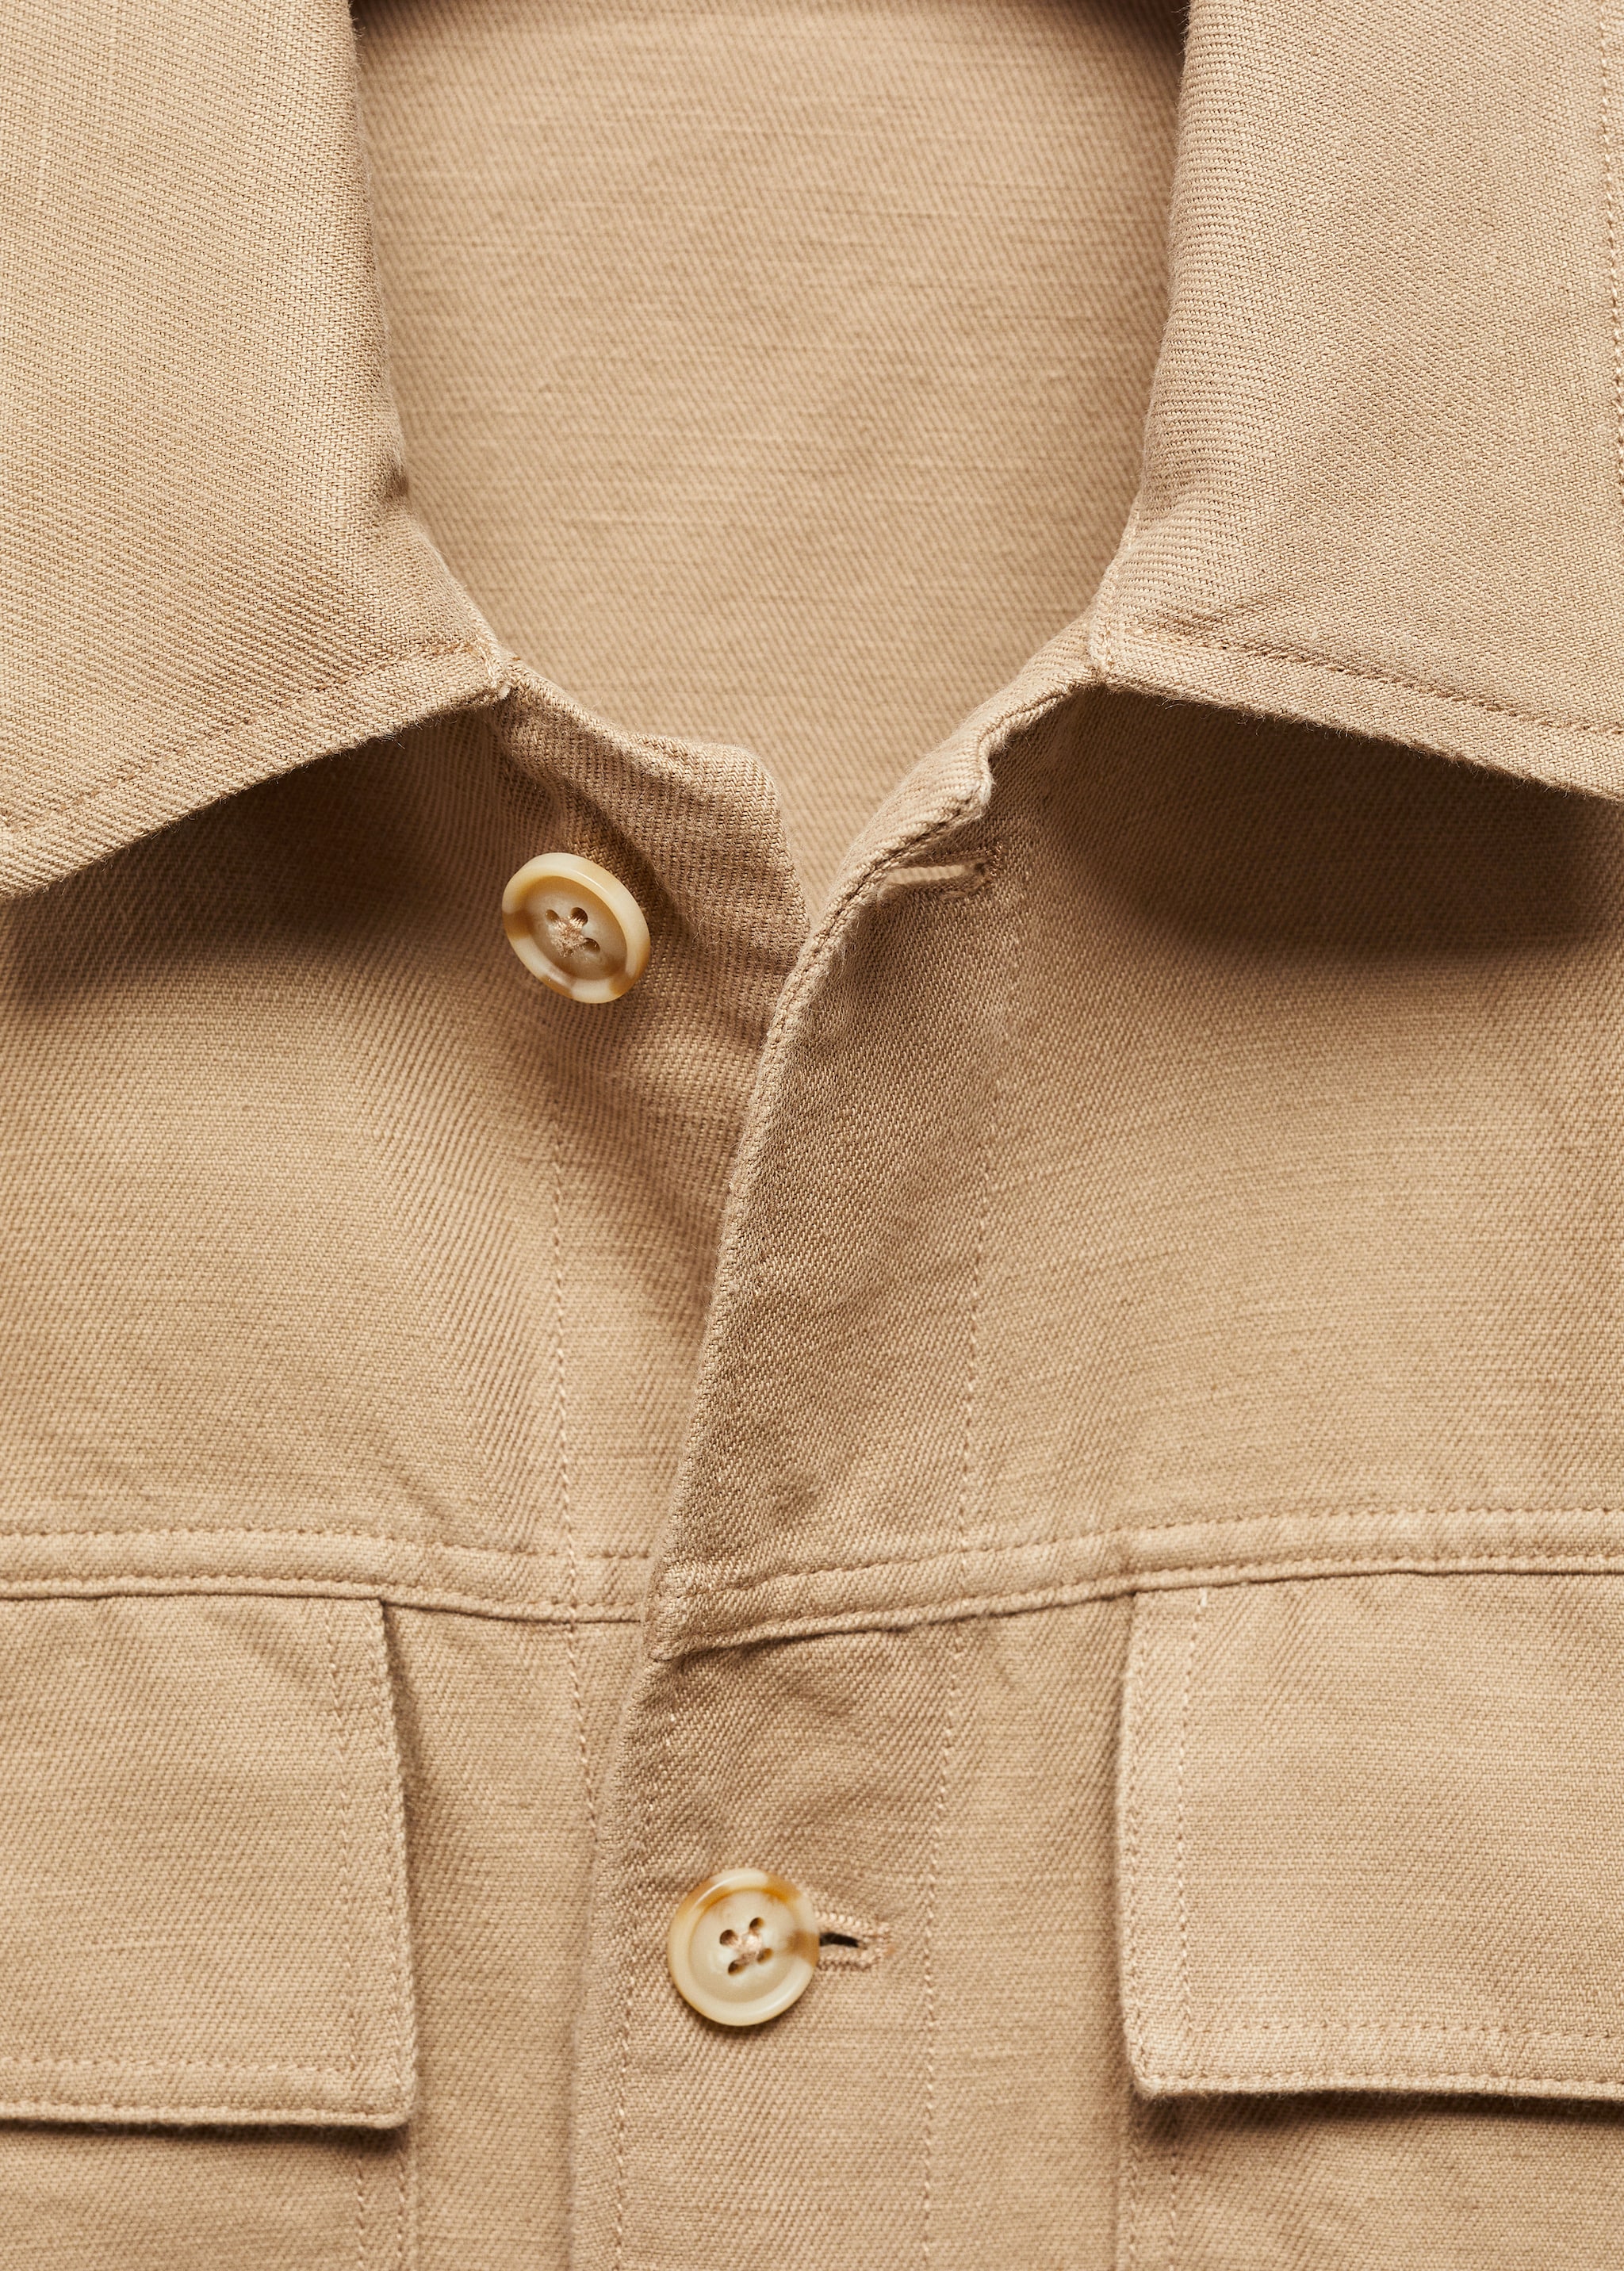 Верхняя рубашка хлопок и лен с карманами - Деталь изделия 8